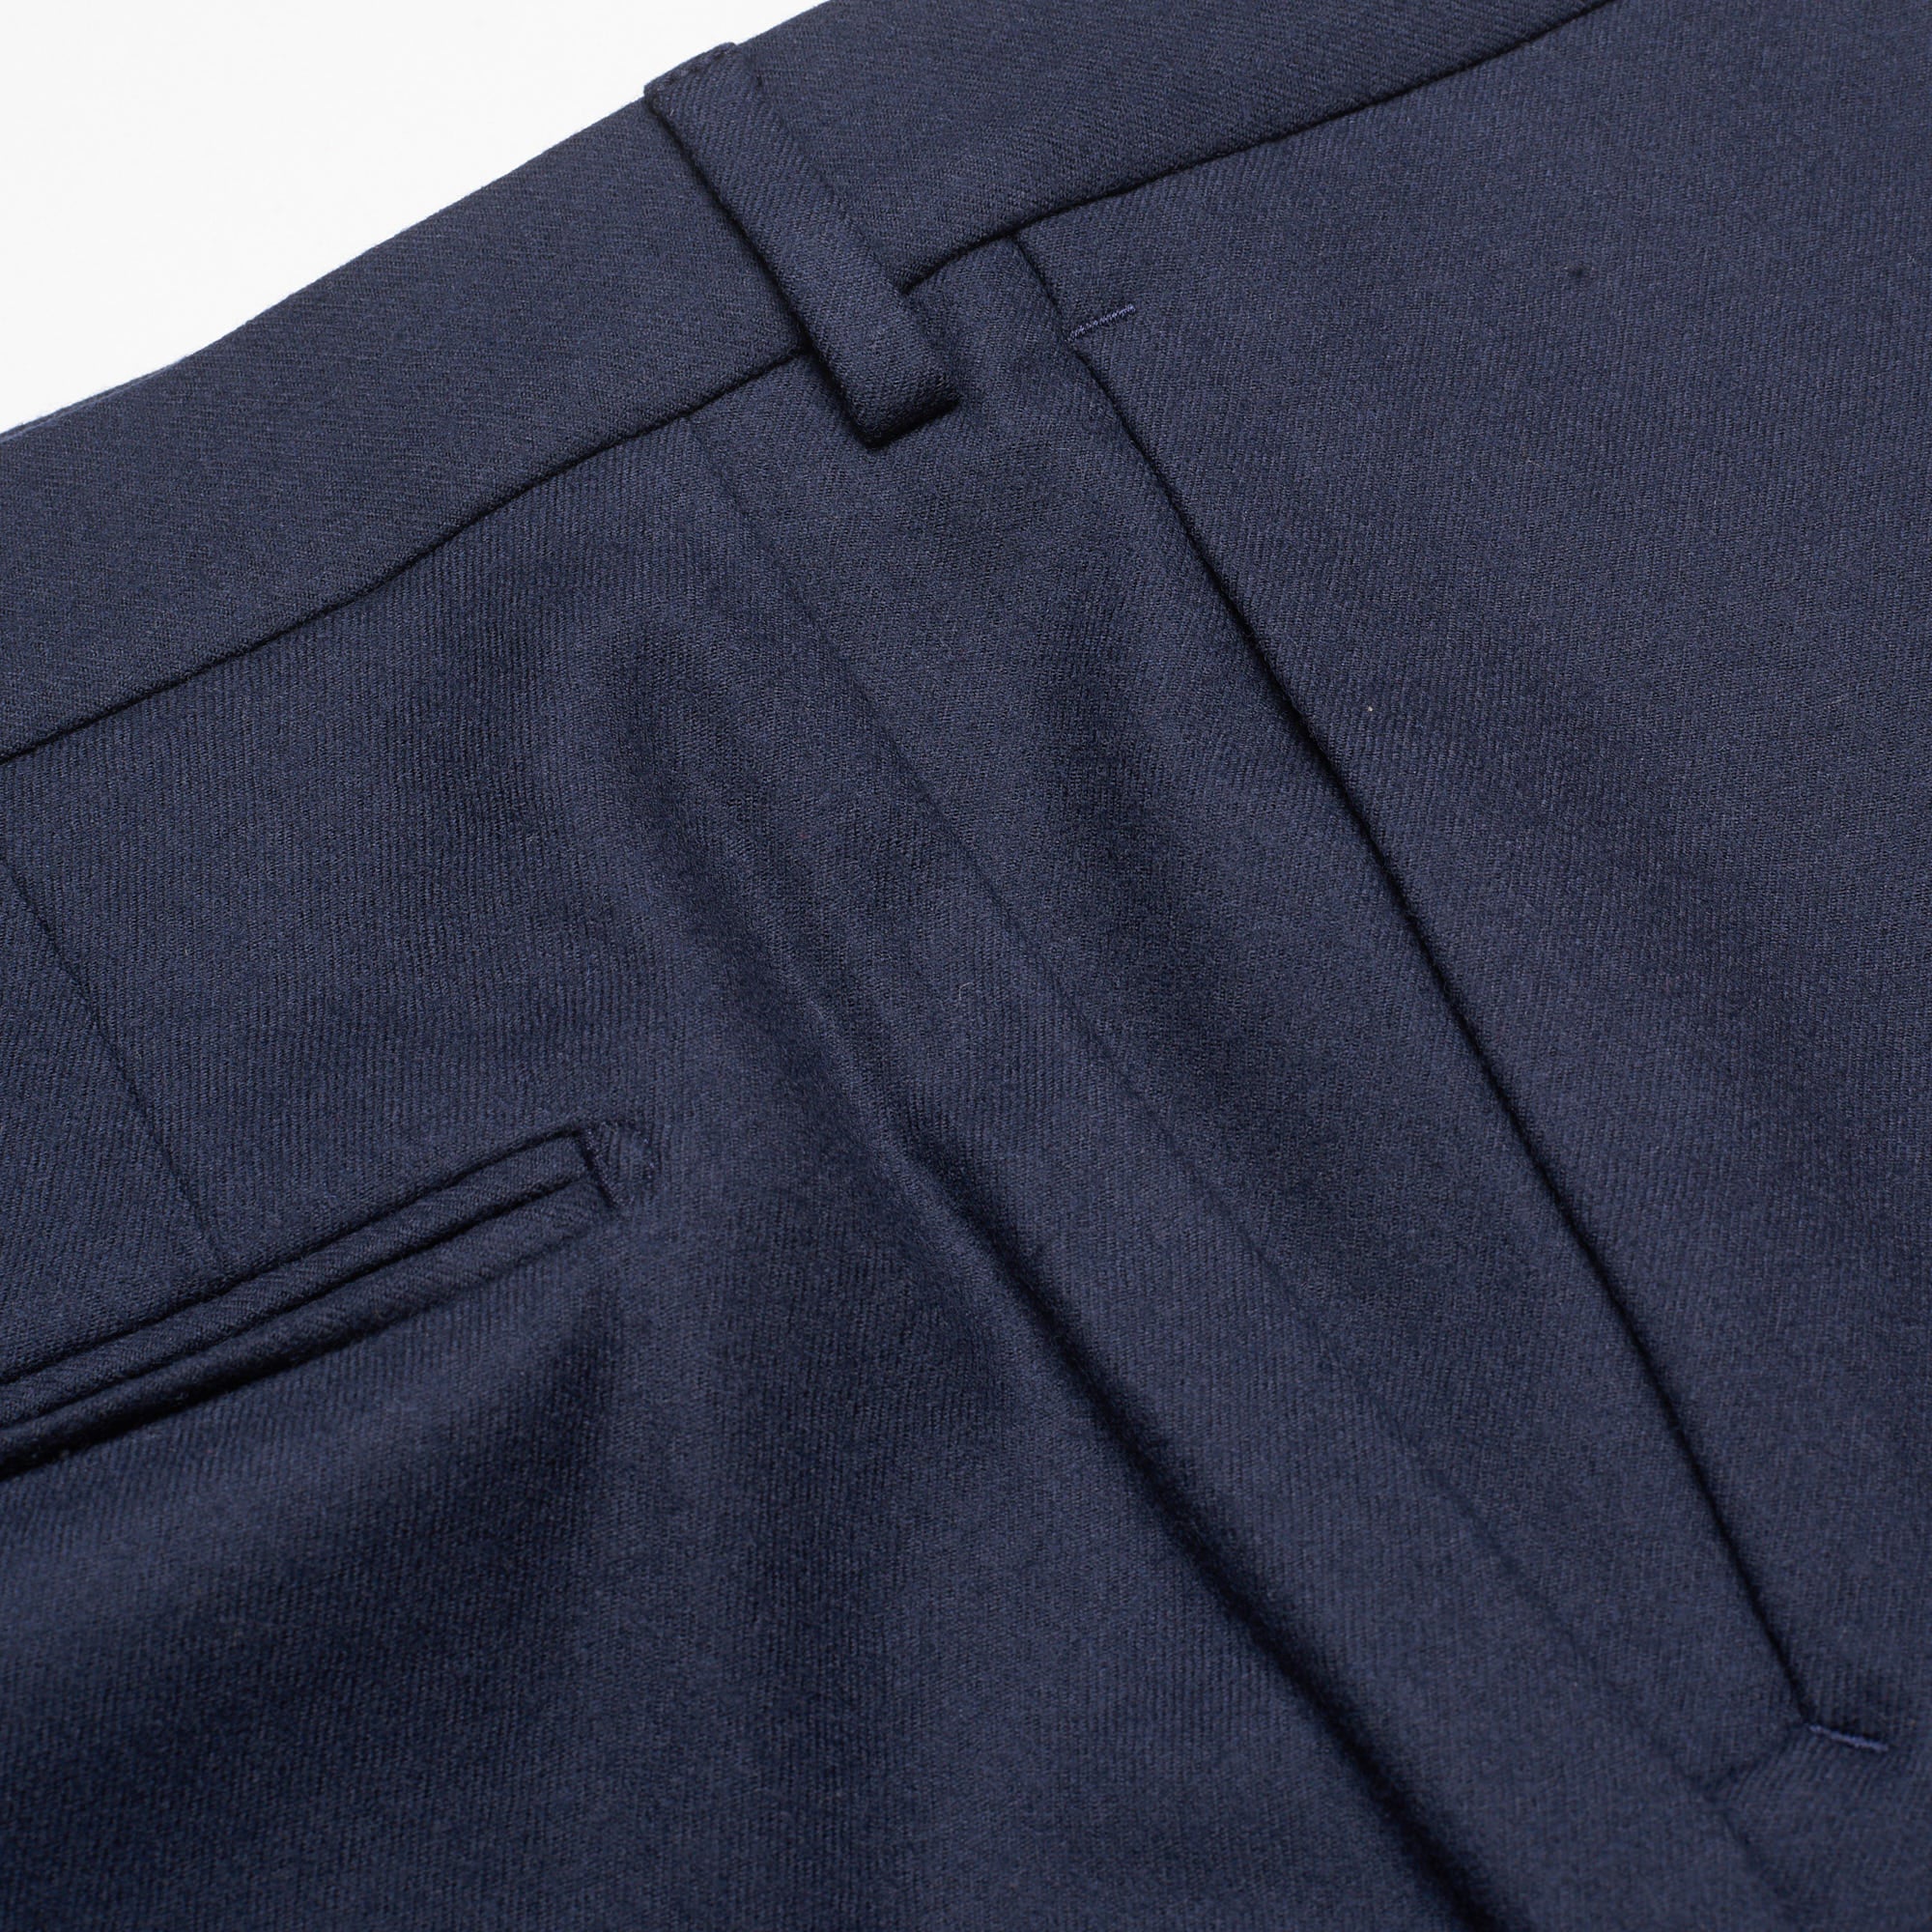 INCOTEX (Slowear) Navy Blue Flannel Wool Twill Dress Pants EU 60 NEW US 44 Slim INCOTEX